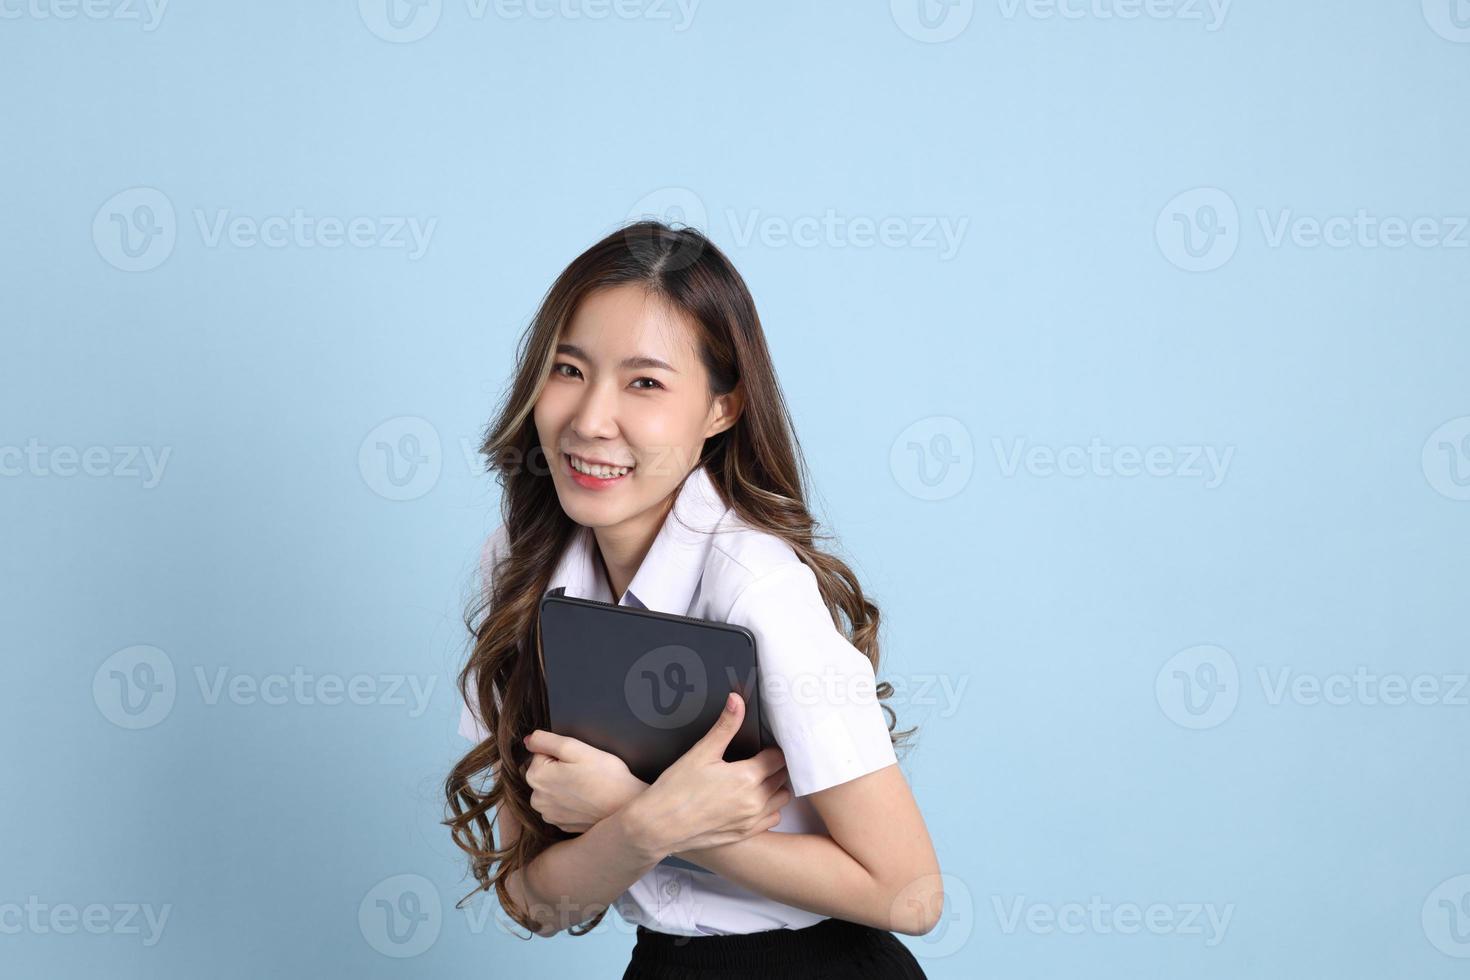 garota de uniforme de estudante foto